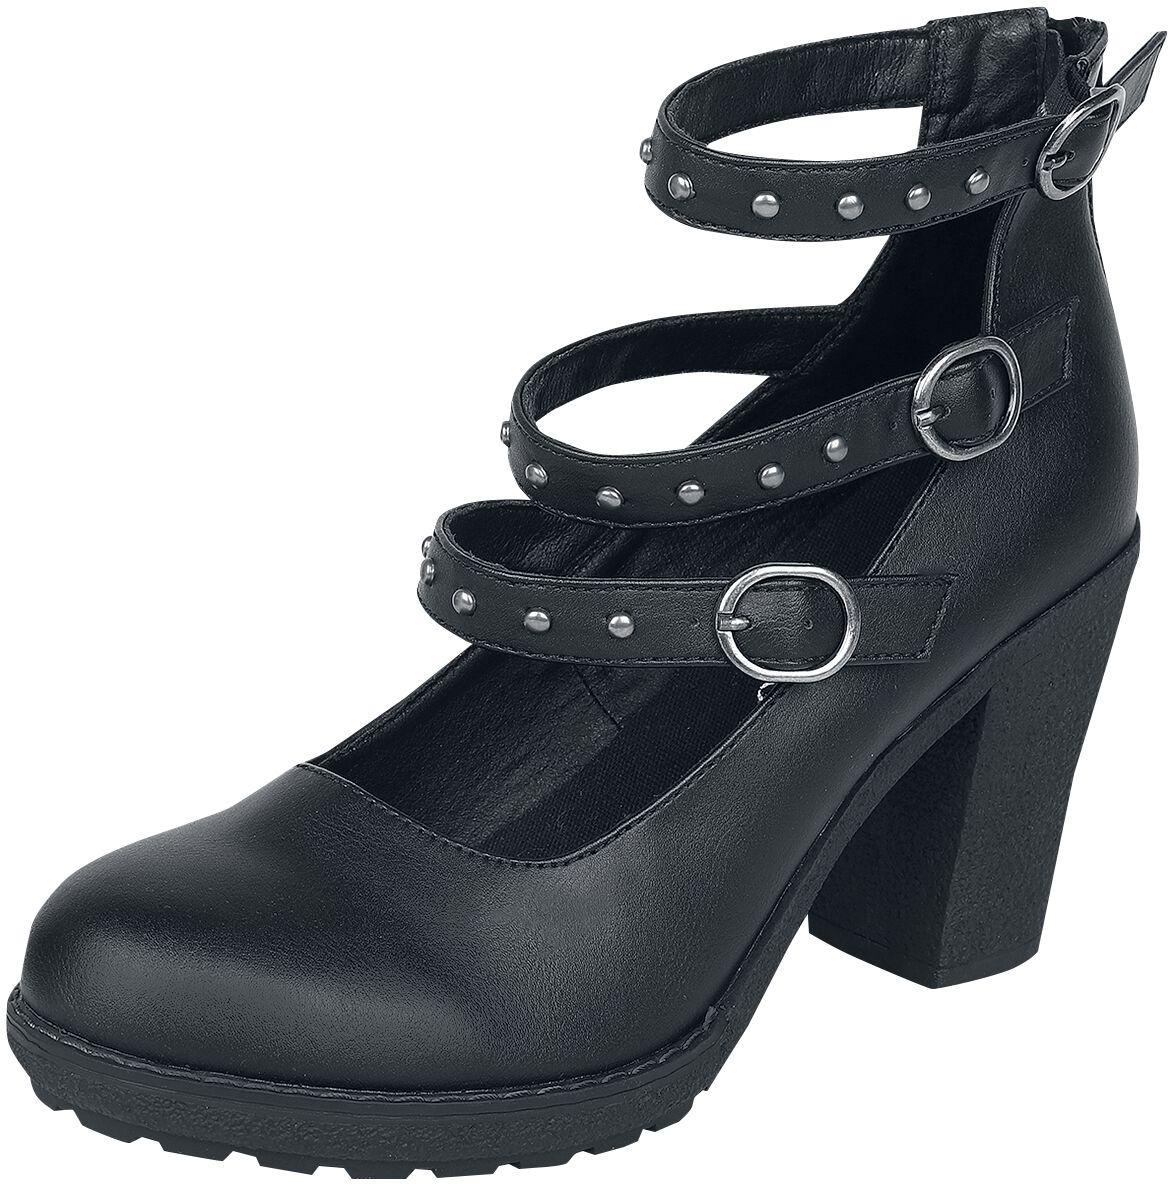 Gothicana by EMP - Gothic High Heel - High Heels mit Riemen und Nieten - EU37 bis EU41 - für Damen - Größe EU41 - schwarz